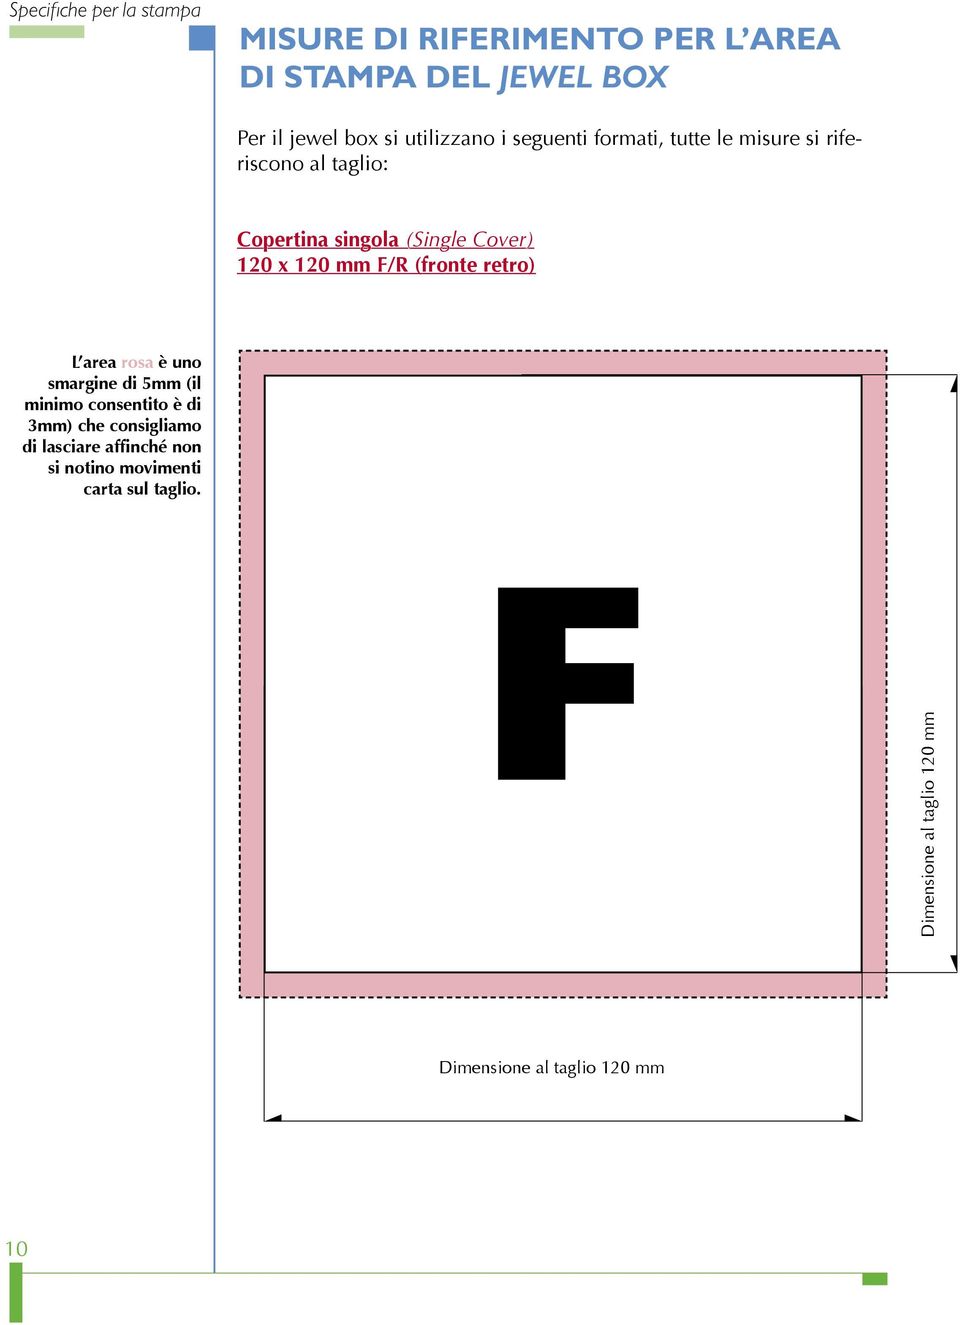 120 mm F/R (fronte retro) L area rosa è uno smargine di 5mm (il minimo consentito è di 3mm) che consigliamo di